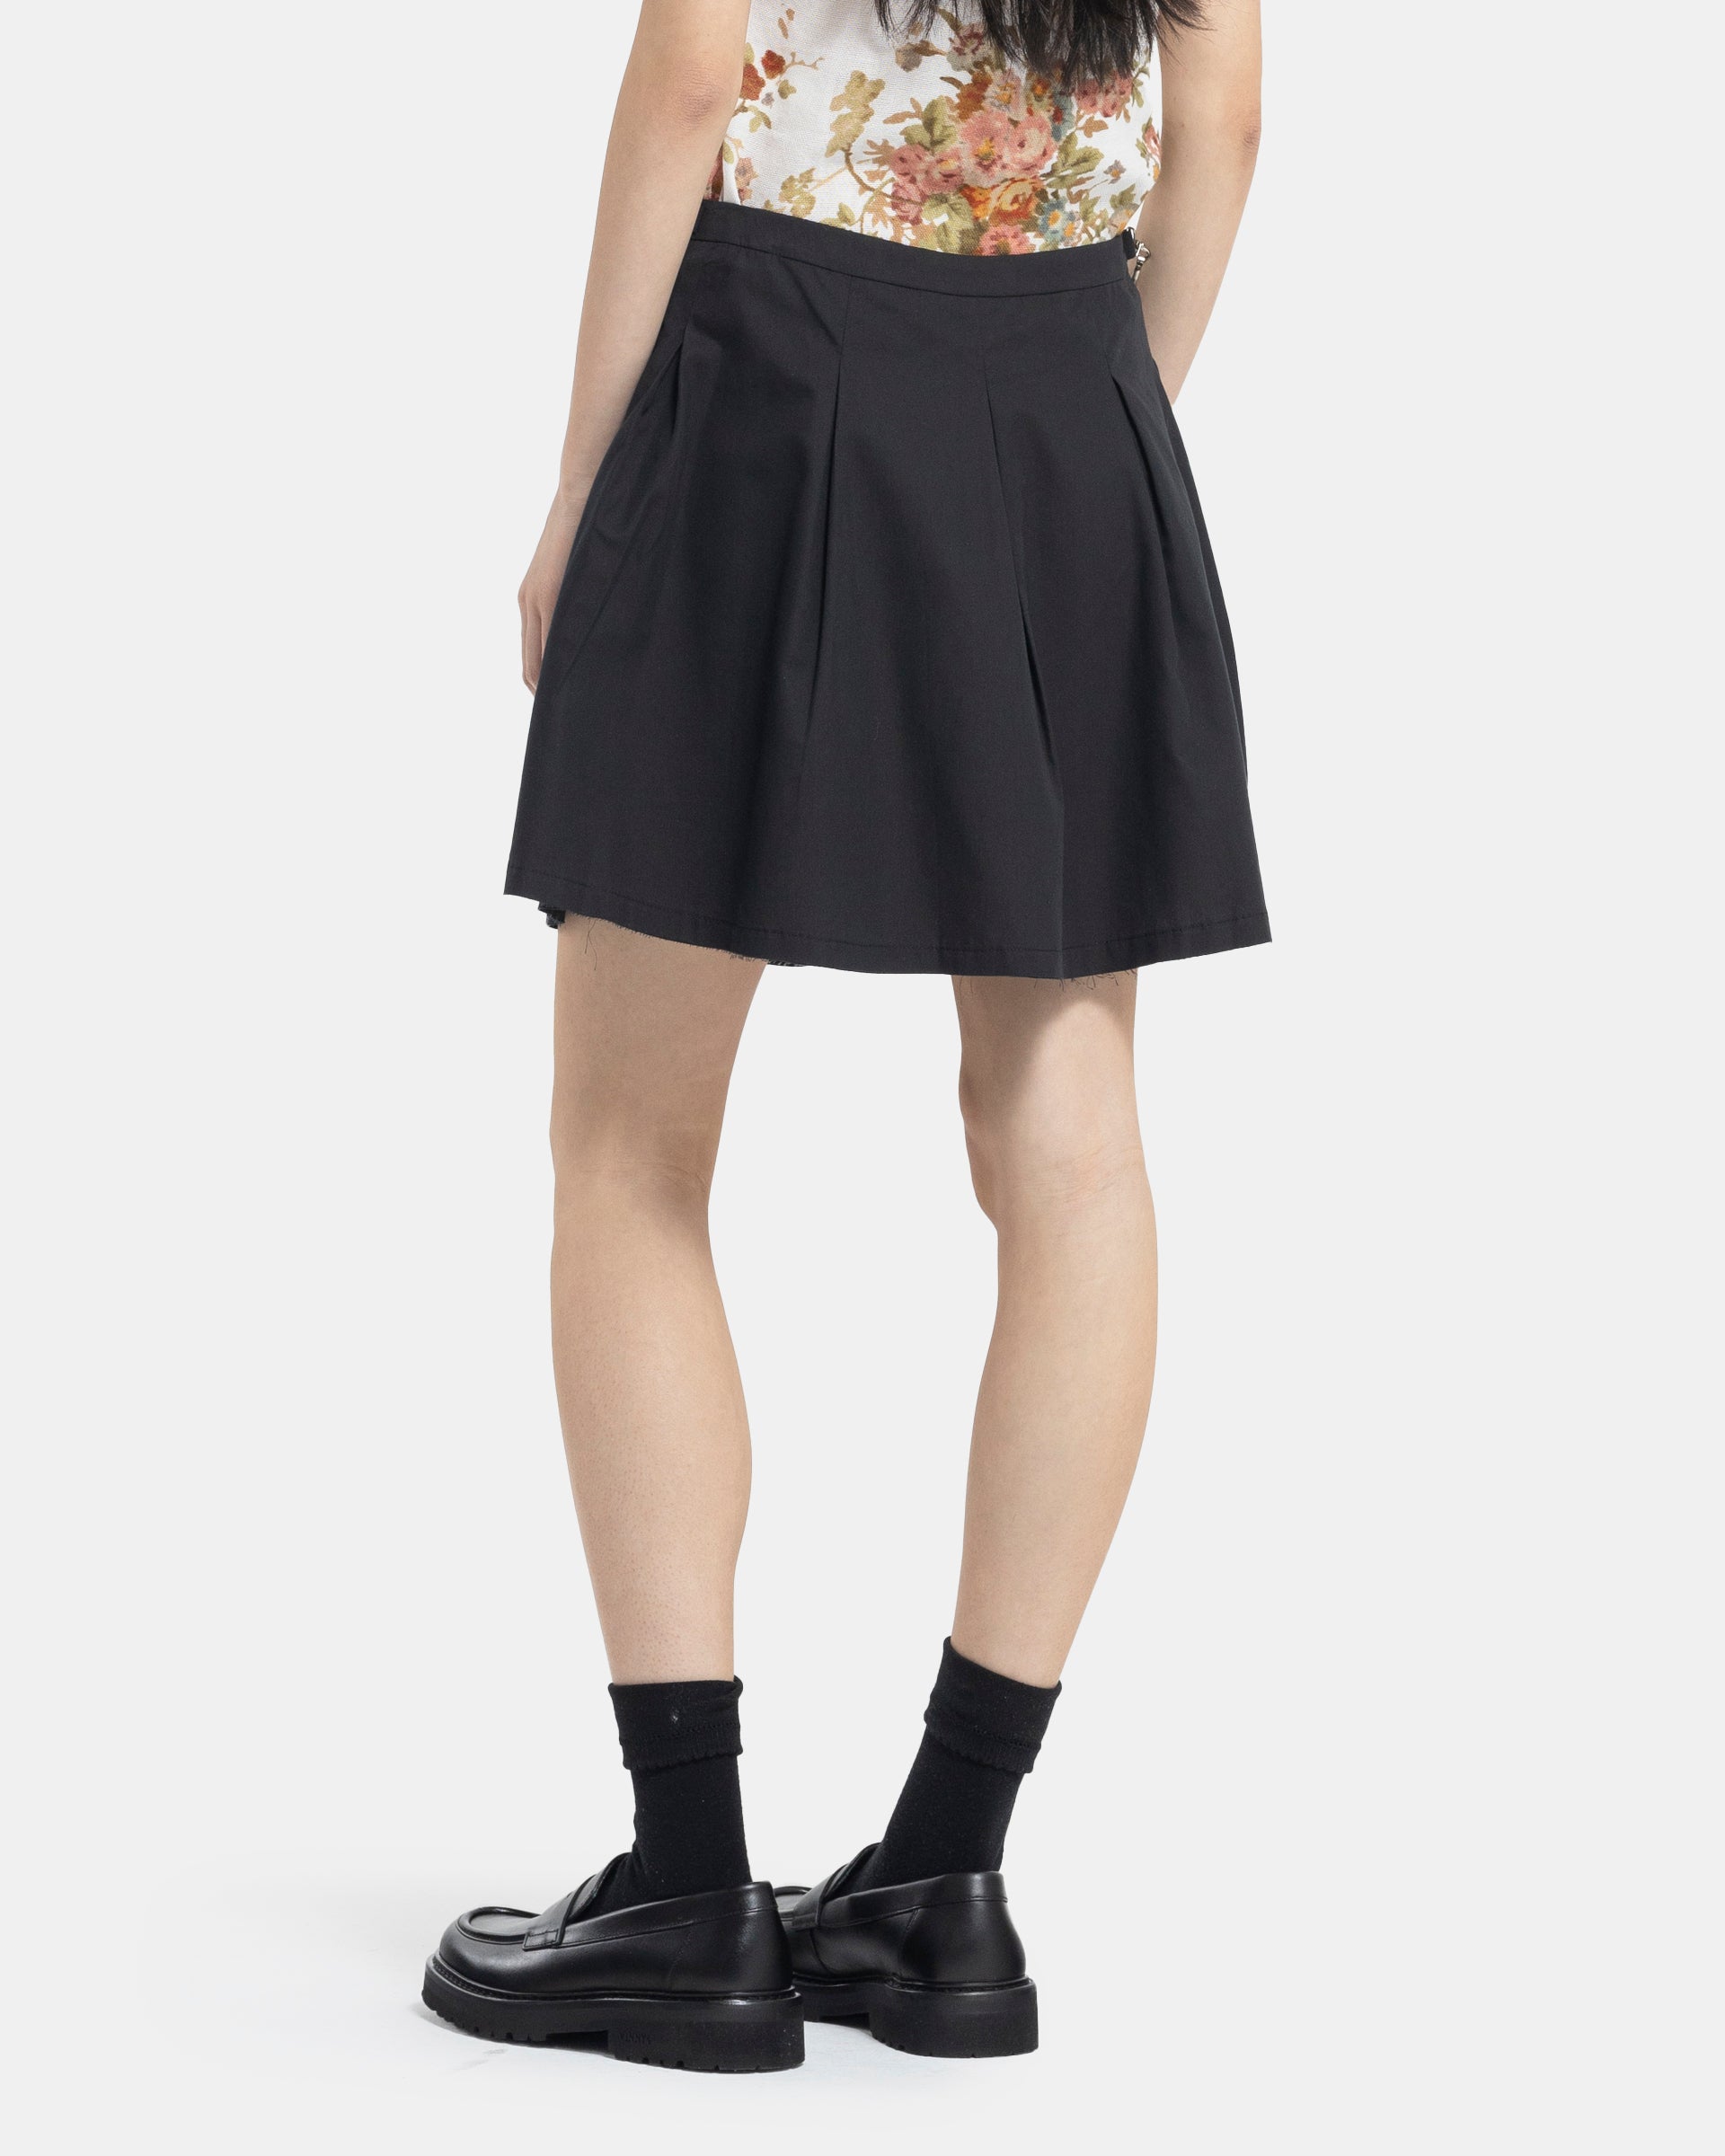 Object Skirt in Black Peached Cupro Poplin